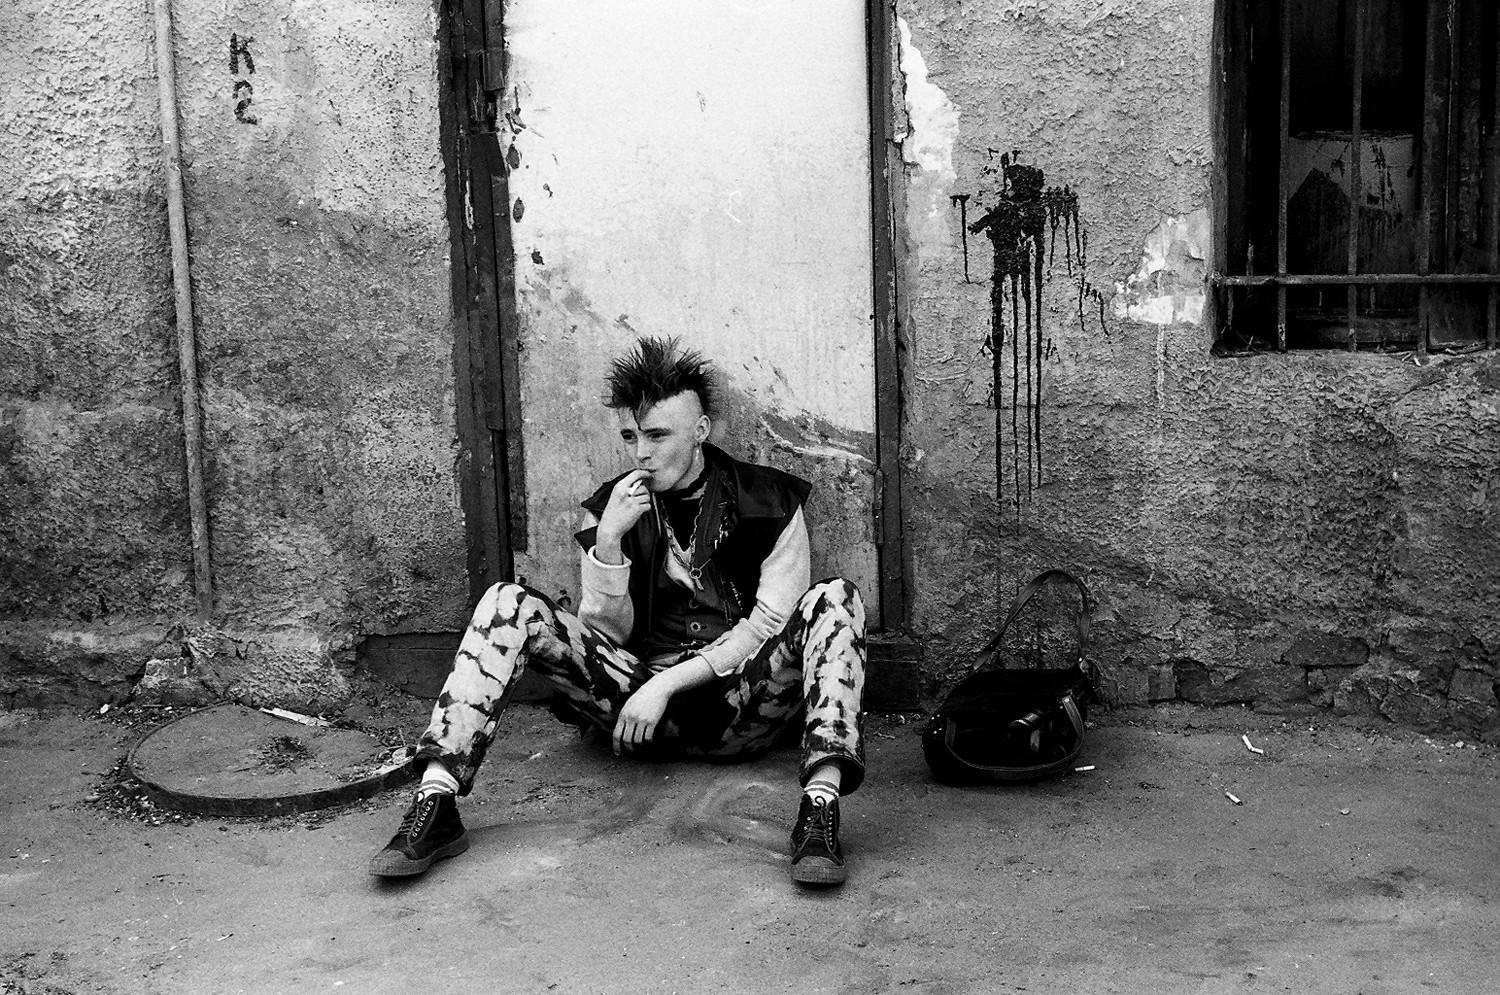 Москва, 1986. Из проекта «Я видел рок-н-ролл». Фотограф Игорь Мухин